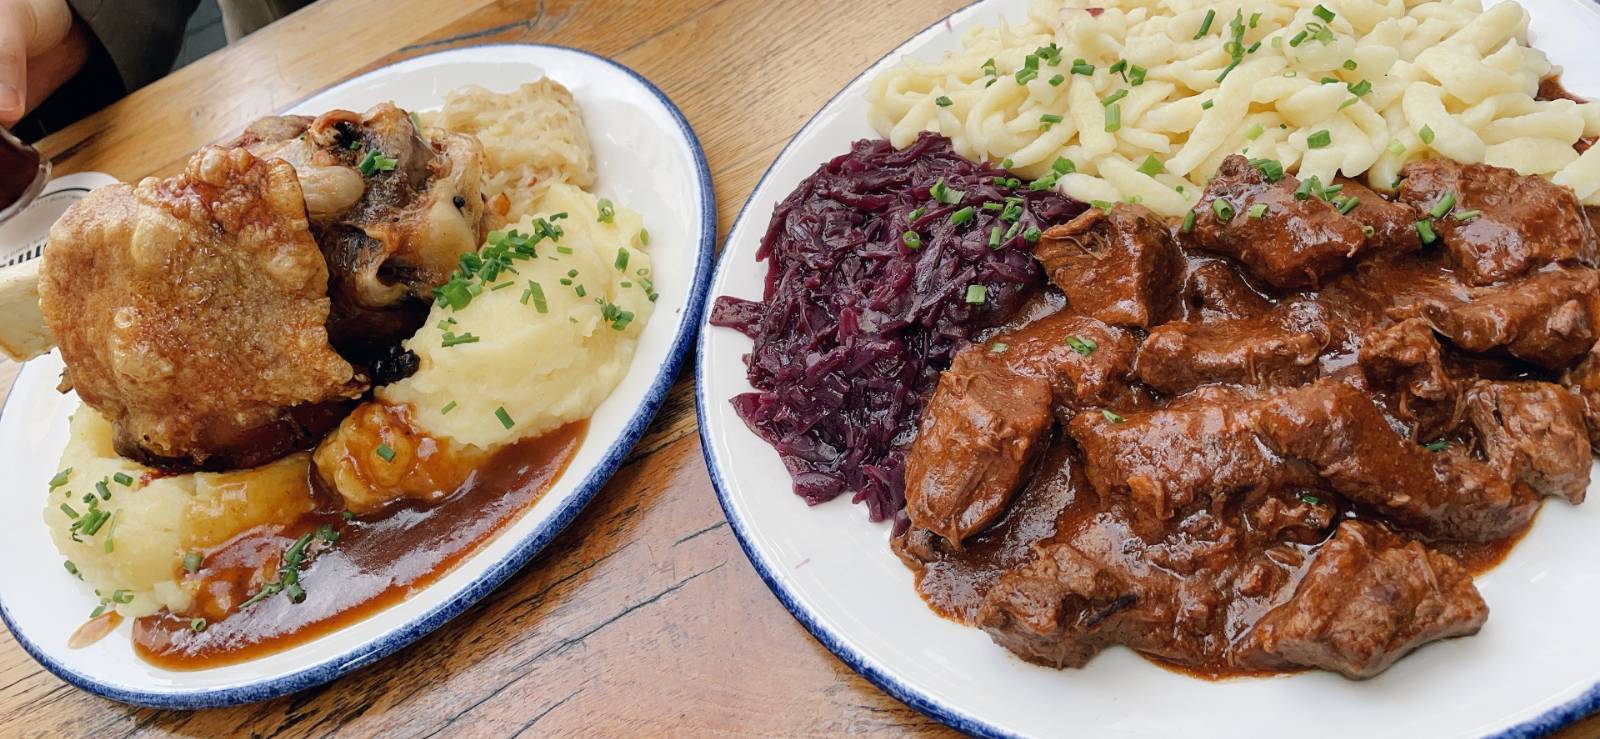 독일의 대표적인 음식, 학센과 굴라쉬, 감자 퓨레와 자우어크라우트(양배추 절임), 직접 촬영